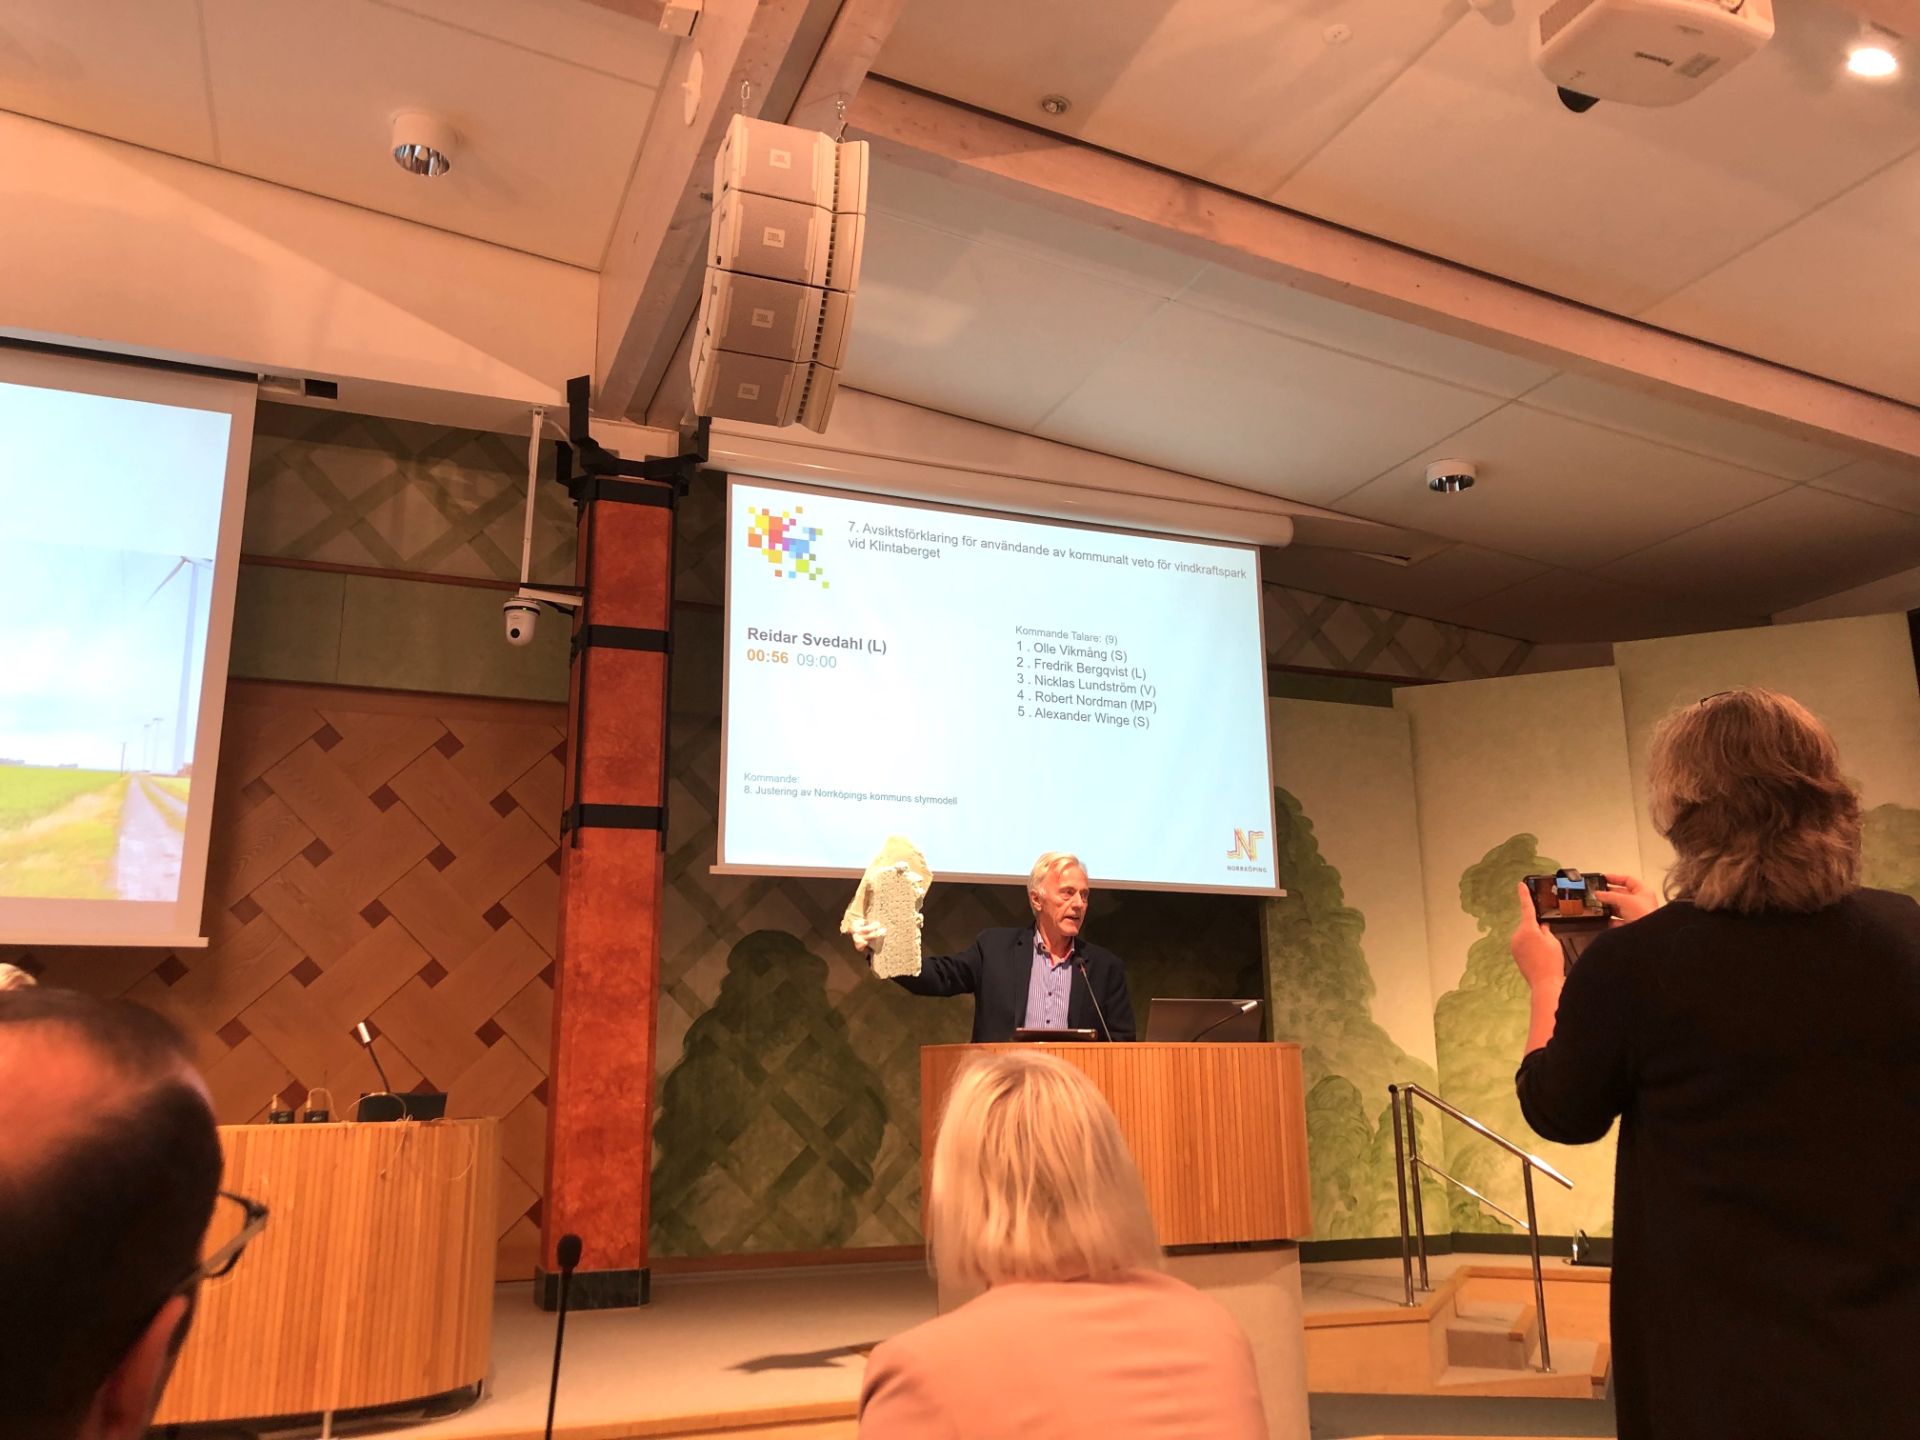 Presentation om vindkraft i kommunfullmäktige 28 november 2022 av Reidar Svedahl, kommunalråd på Norrköpings kommun, vid avsiktsförklaring för användande av kommunalt veto för vindkraftsindustri vid Klintaberget.